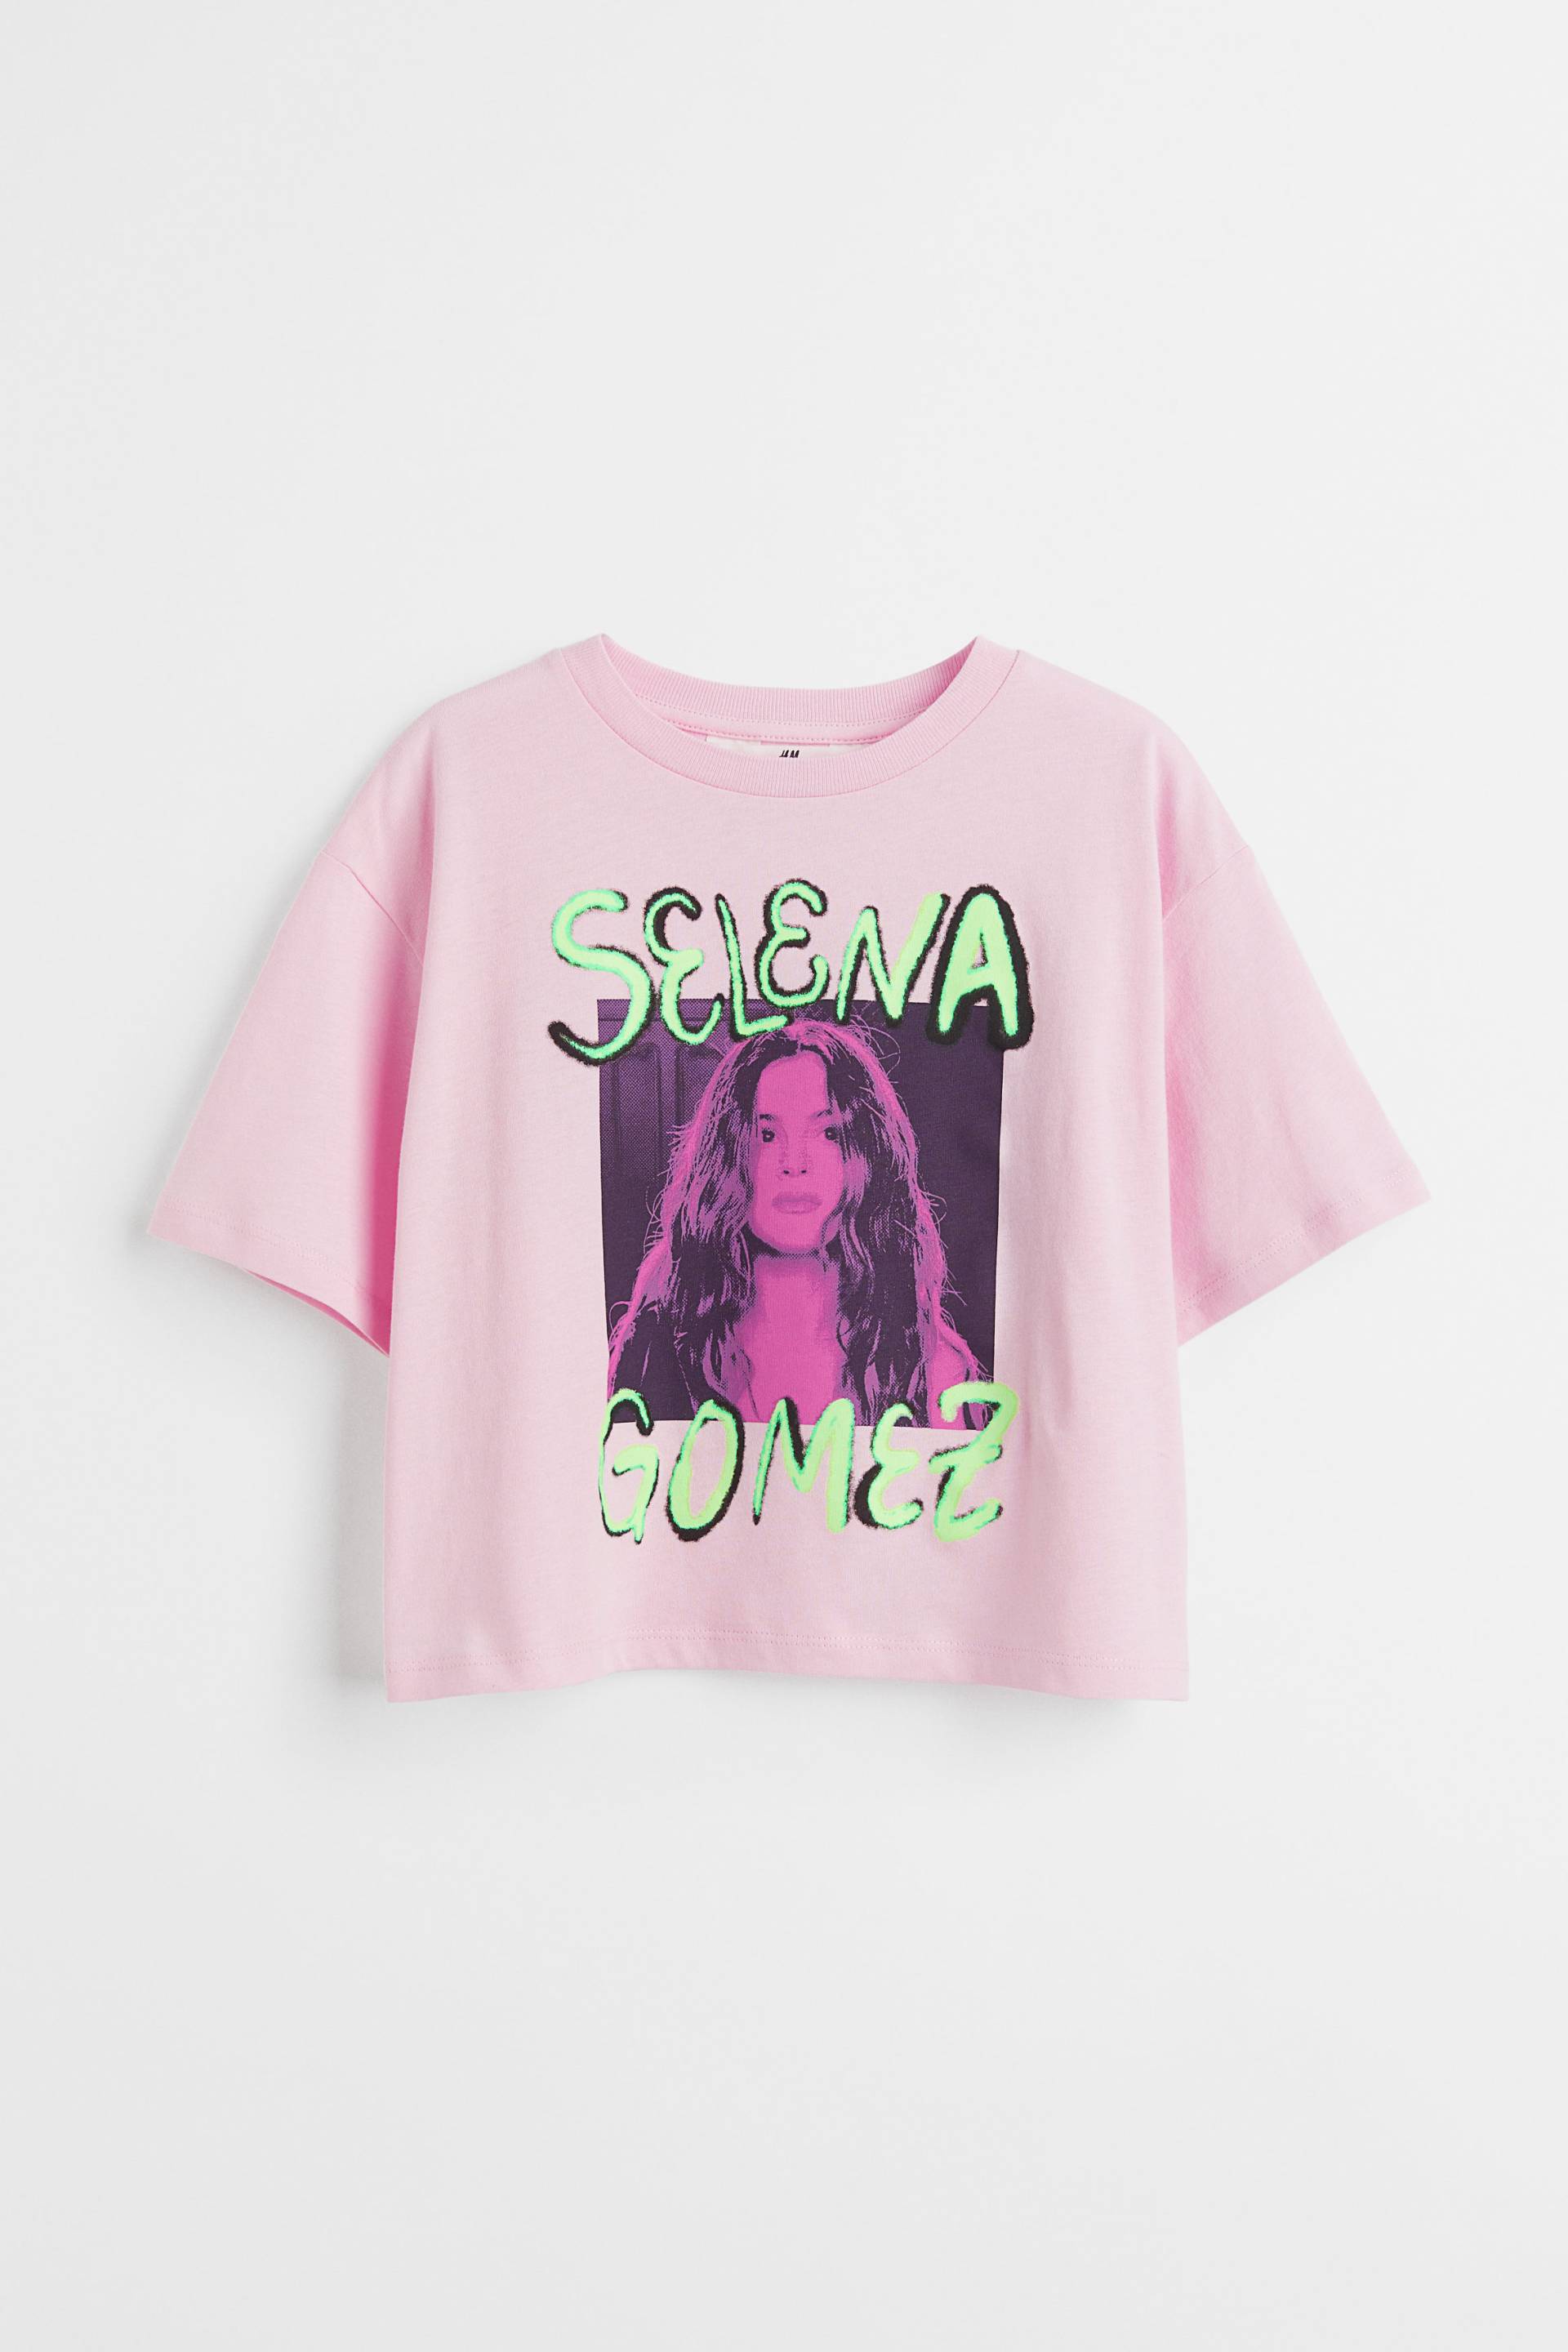 H&M Cropped Jerseyshirt mit Print Hellrosa/Selena Gomez, T-Shirts & Tops in Größe 158/164. Farbe: Light pink/selena gomez von H&M